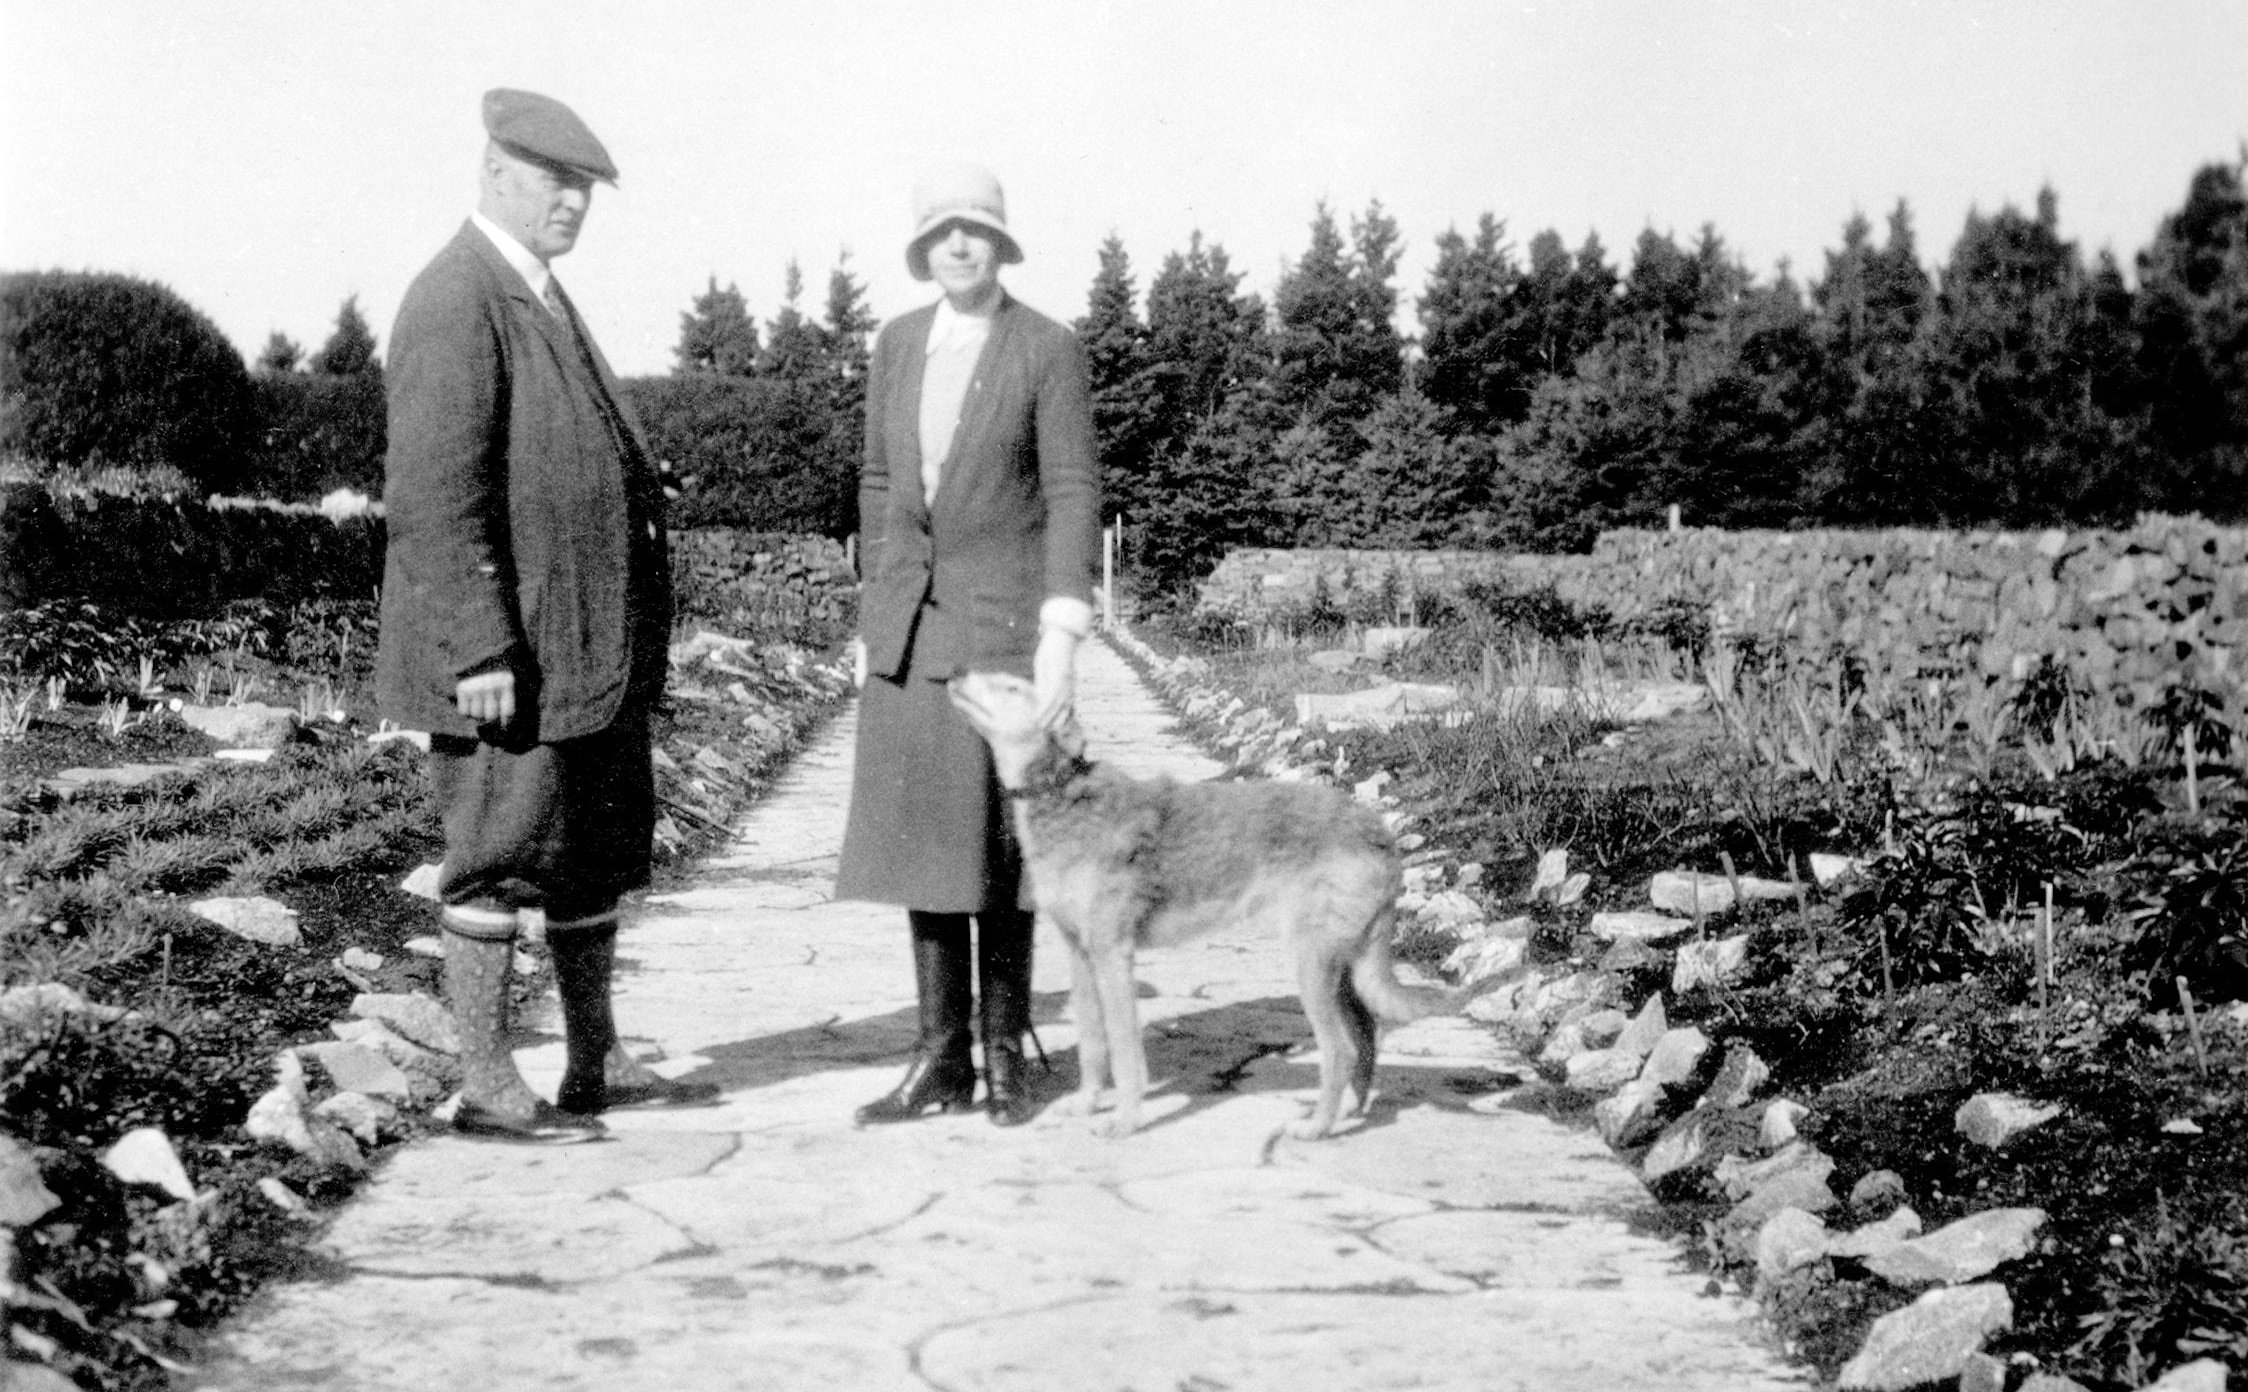 Un homme et une femme accompagnés d'un chien prennent la pose dans une allée large d'un grand jardin.